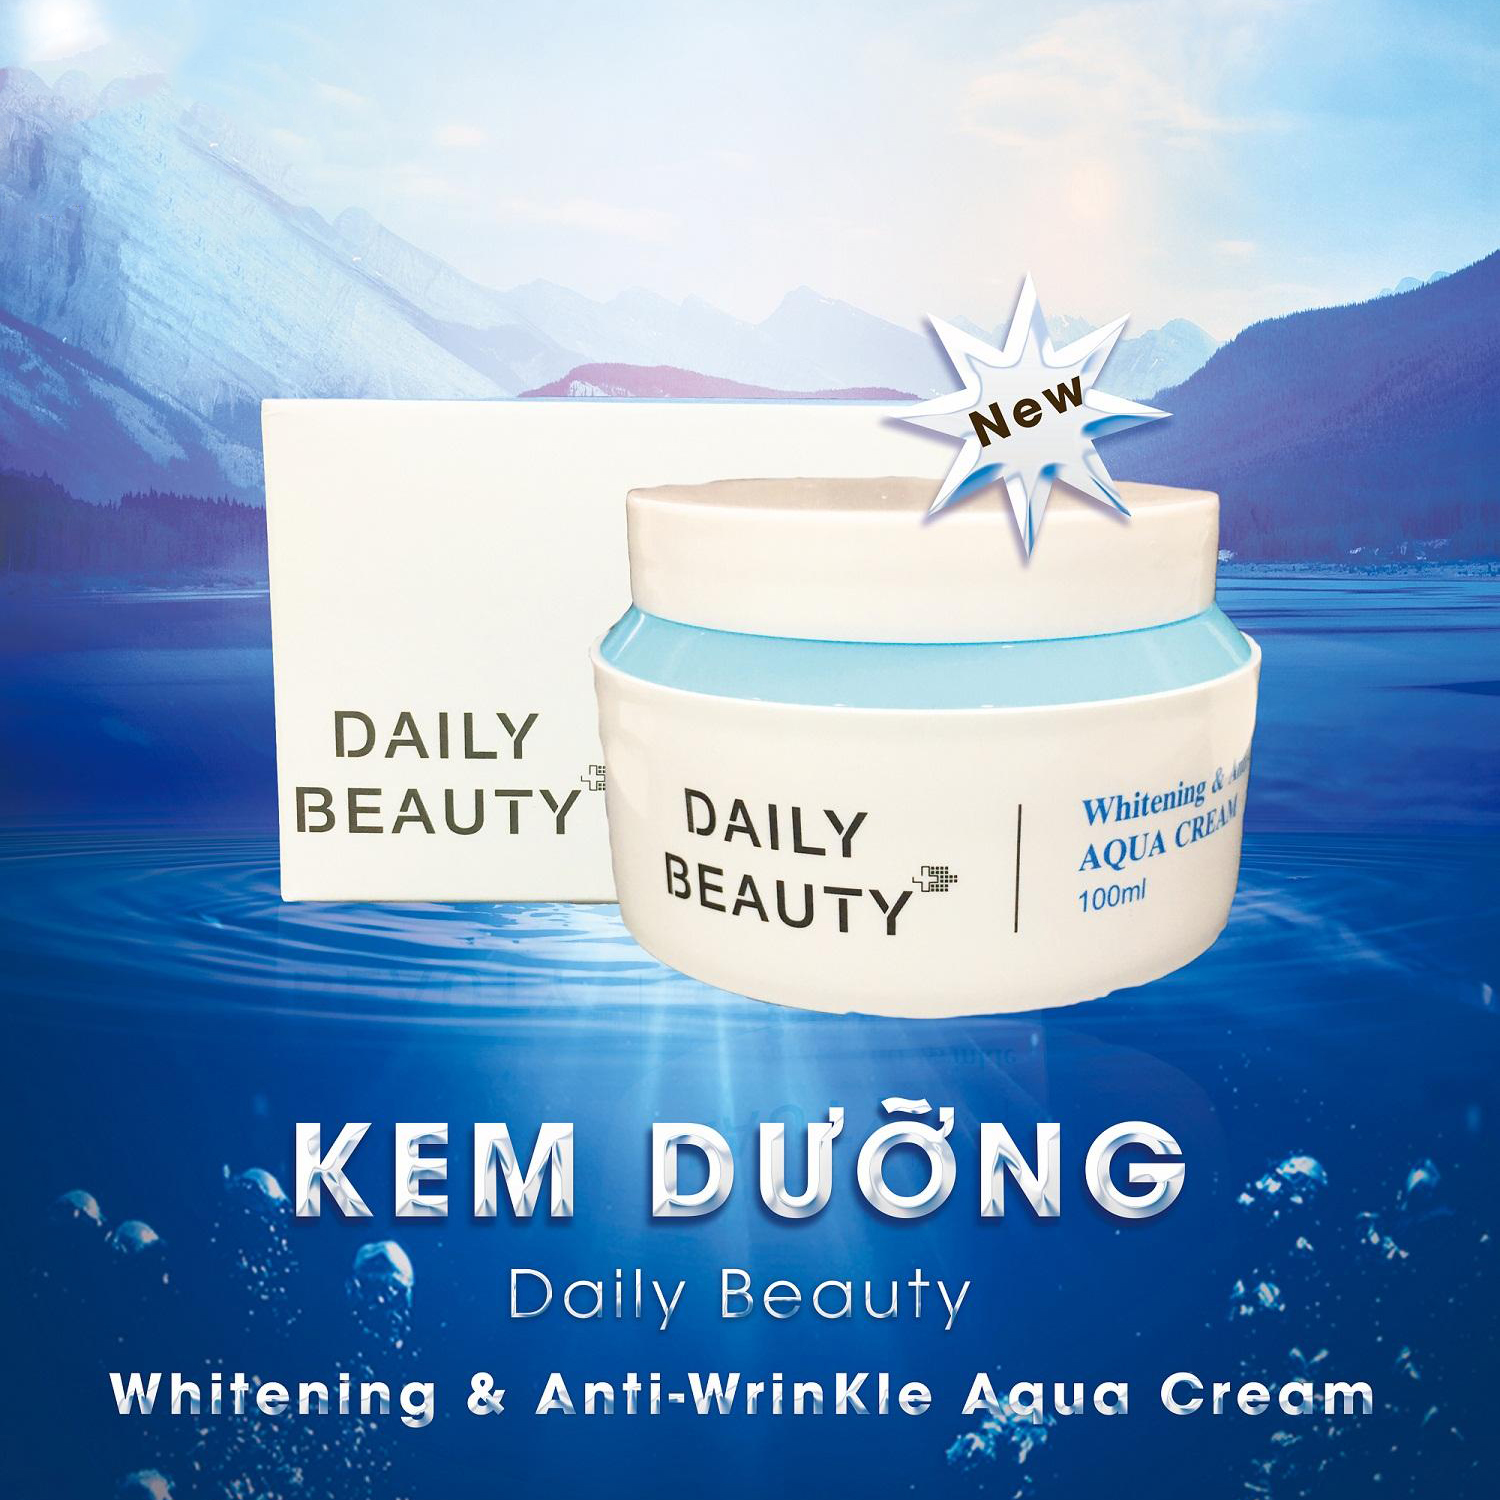 Kem dưỡng Daily Beauty Intensive Anti-WrinKle Aqua Cream R&B Việt Nam xuất xứ LB Hàn Quốc, chiết xuất 100% tự nhiên, cấp ẩm, xóa nhăn, dưỡng trắng, 100ml 1